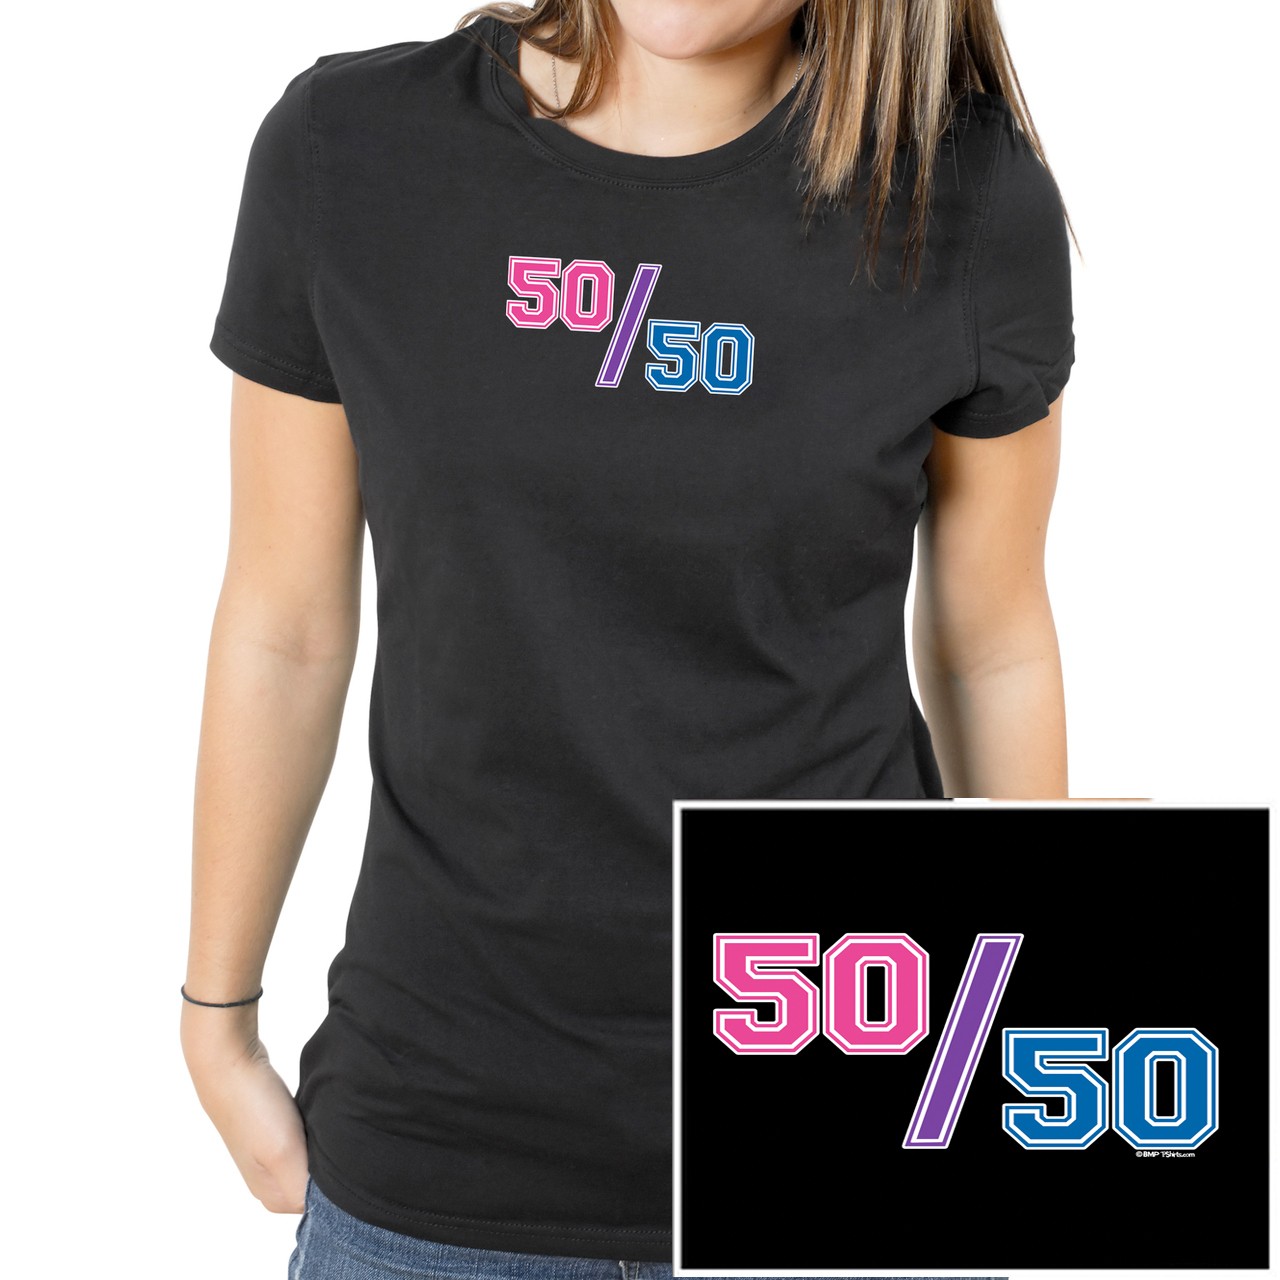 "50/50" (Bisexual Pride Flag Colors) - U...